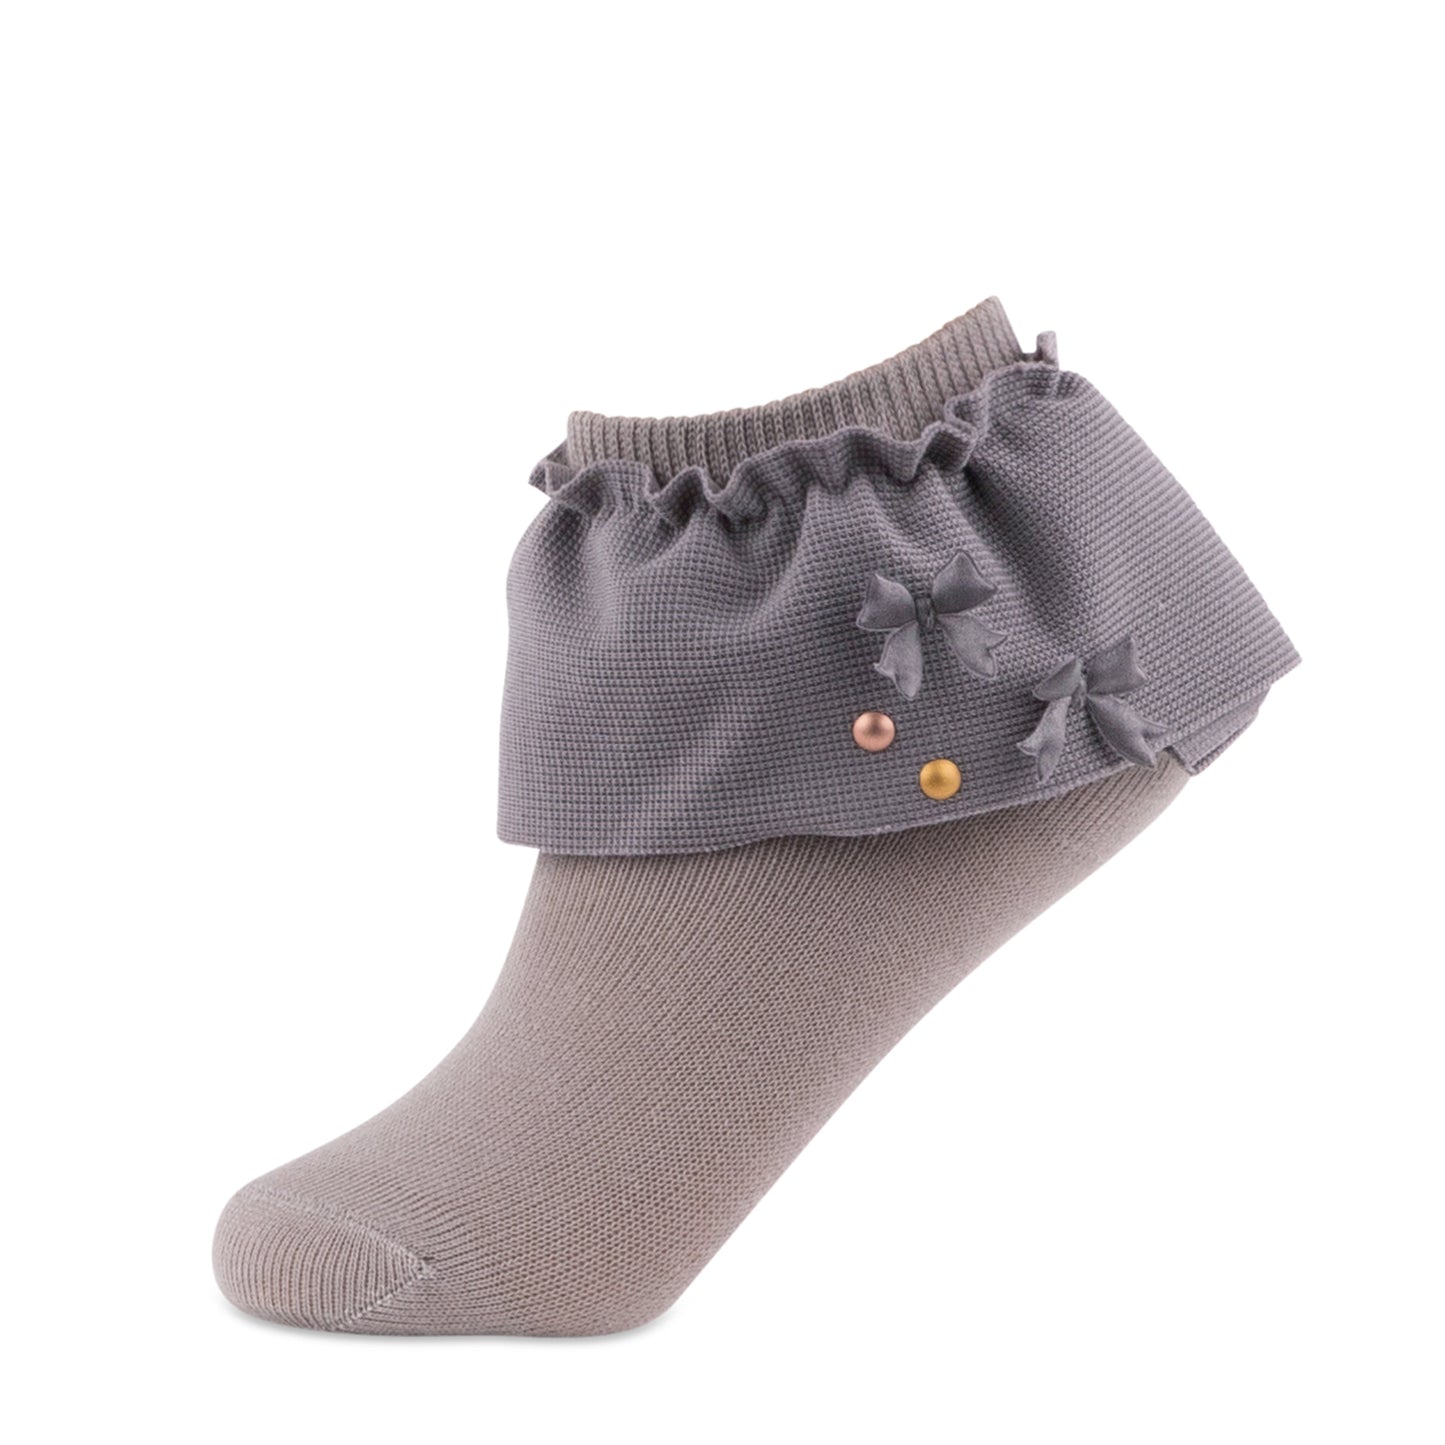 jrp socks gray girls dreamy ruffle lace anklet sock